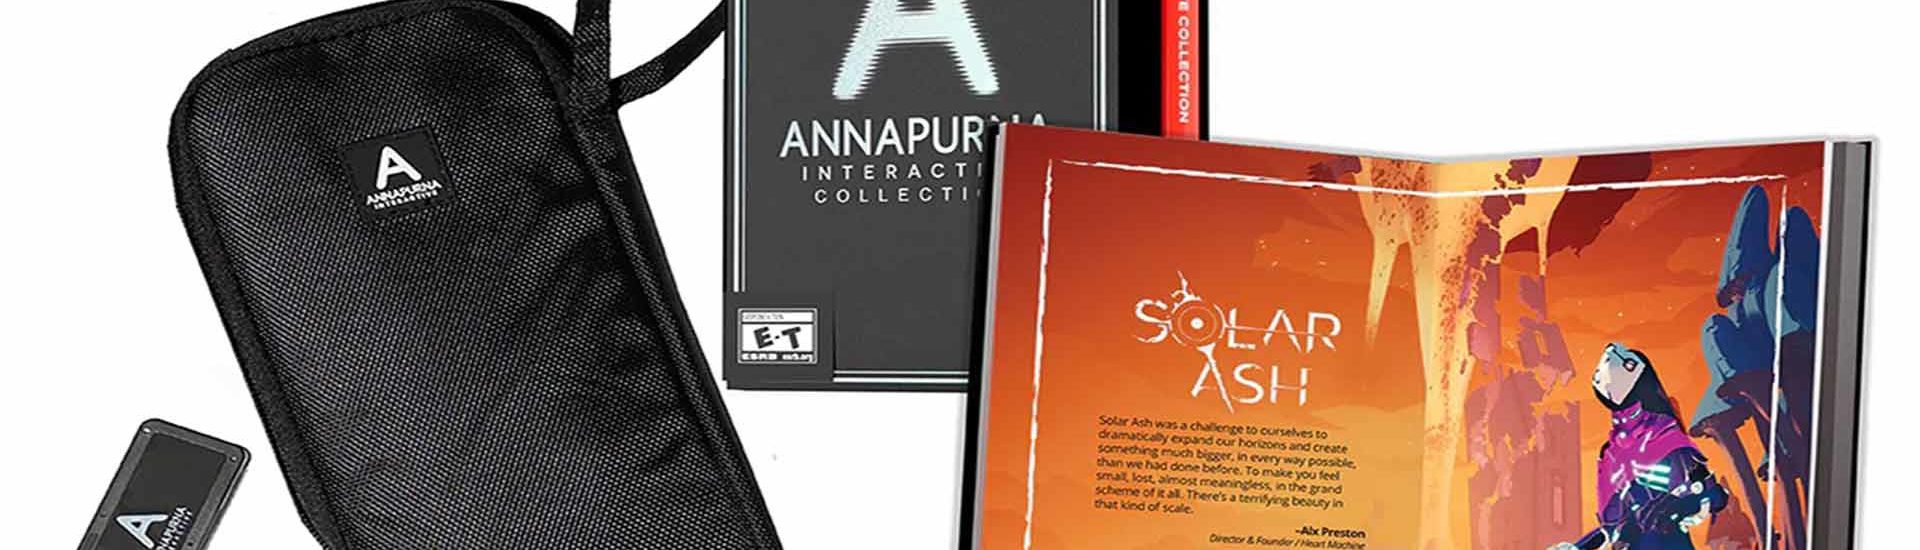 Annapurna kündigt Interactive Deluxe Limited Edition für Switch an